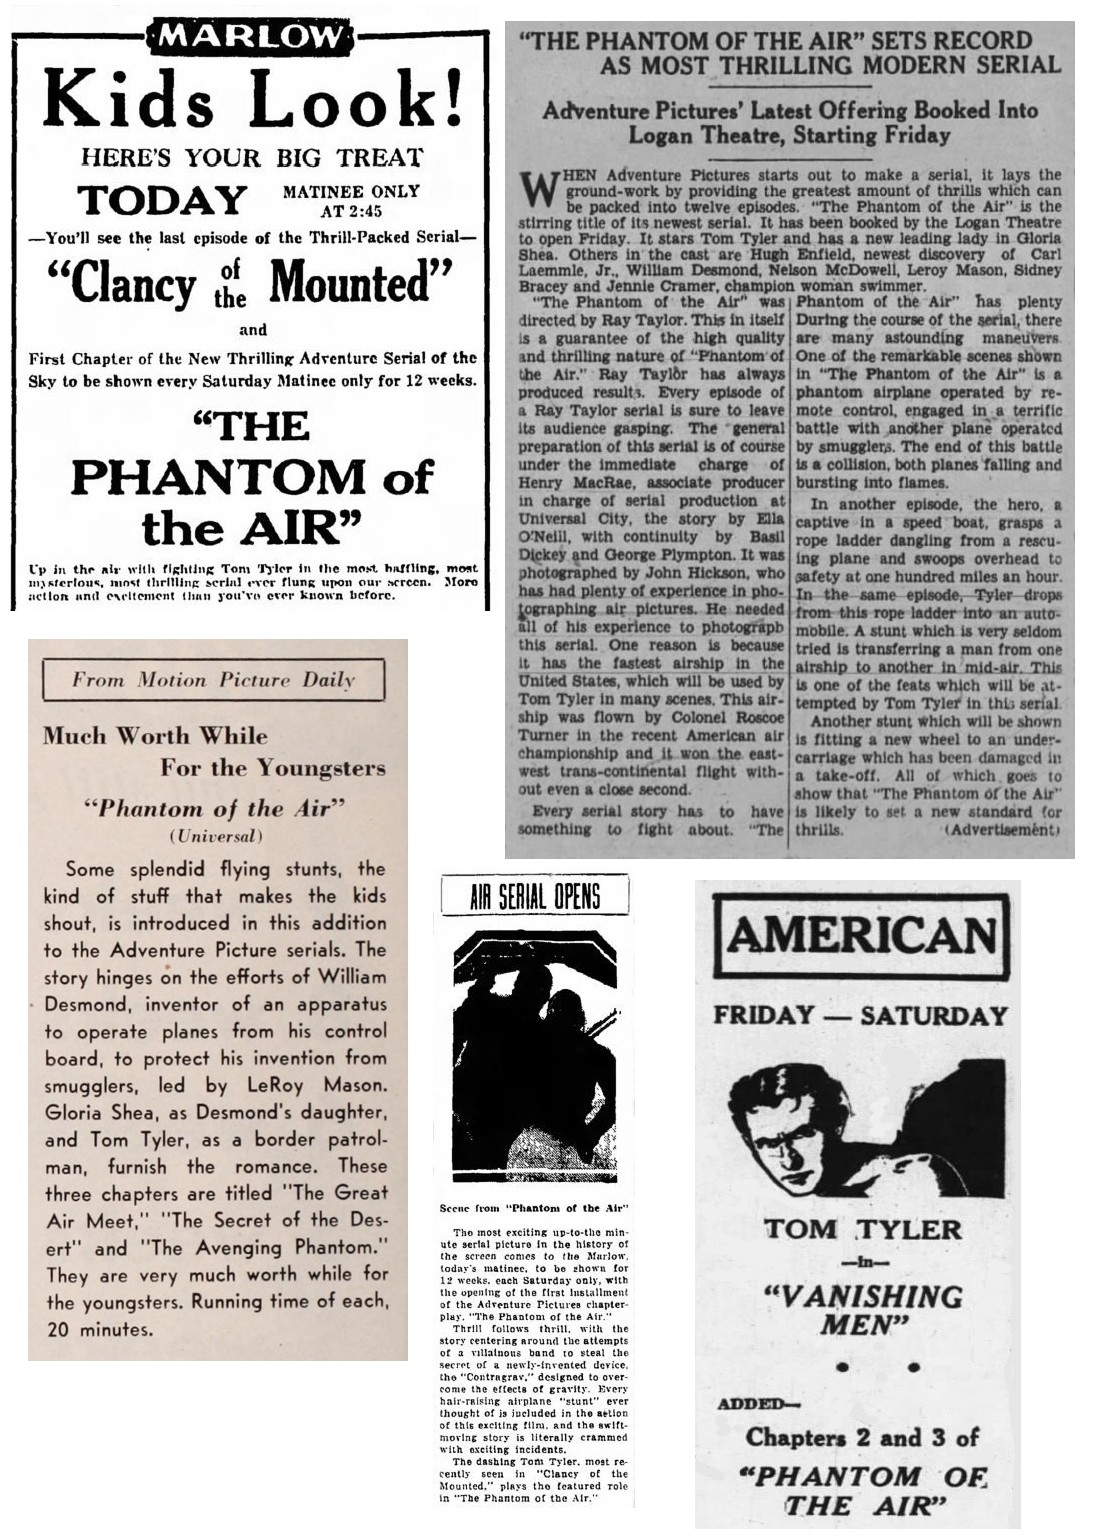 The Phantom of the Air film reviews cinema ads